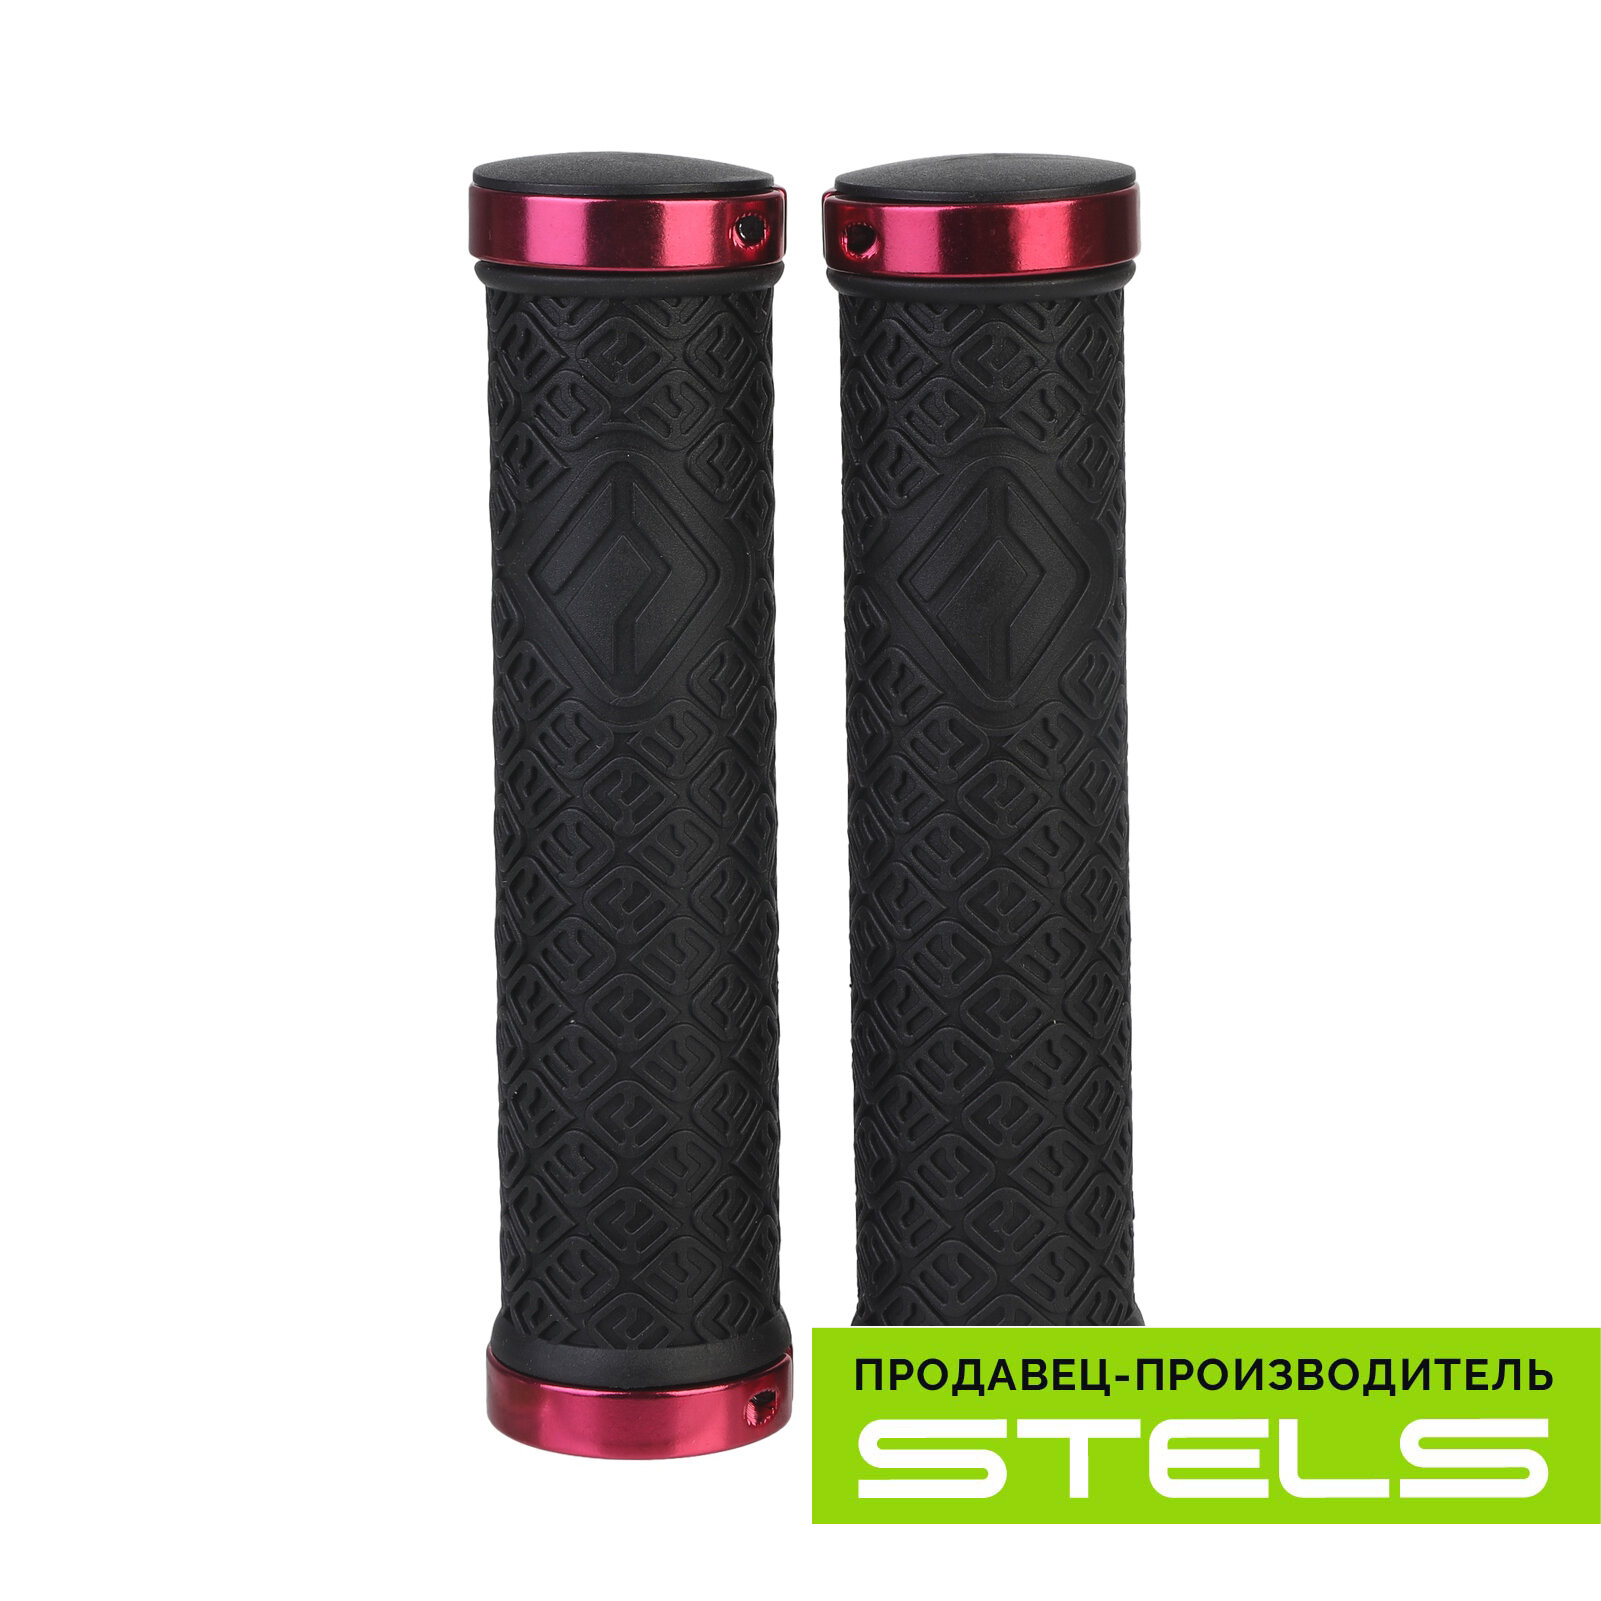 Грипсы руля велосипеда (ручки дя велосипеда) 135мм XH-G116BL чёрные, красные кольца, в индивидуальной упаковке VELOSALE (item:020)